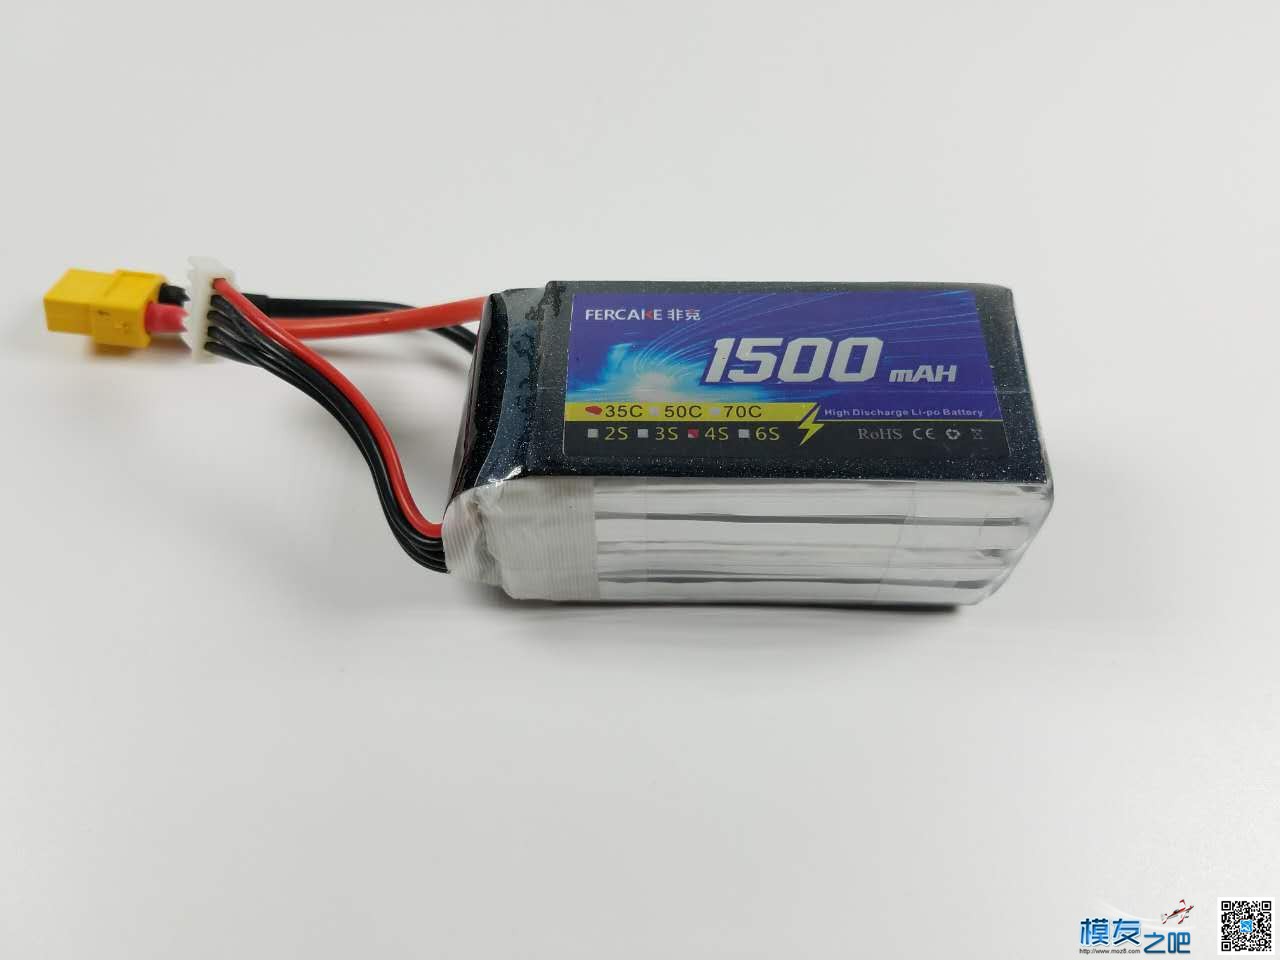 非克电池测试体验活动 电池,非克汽车02,taobao 作者:飞天狼 5118 